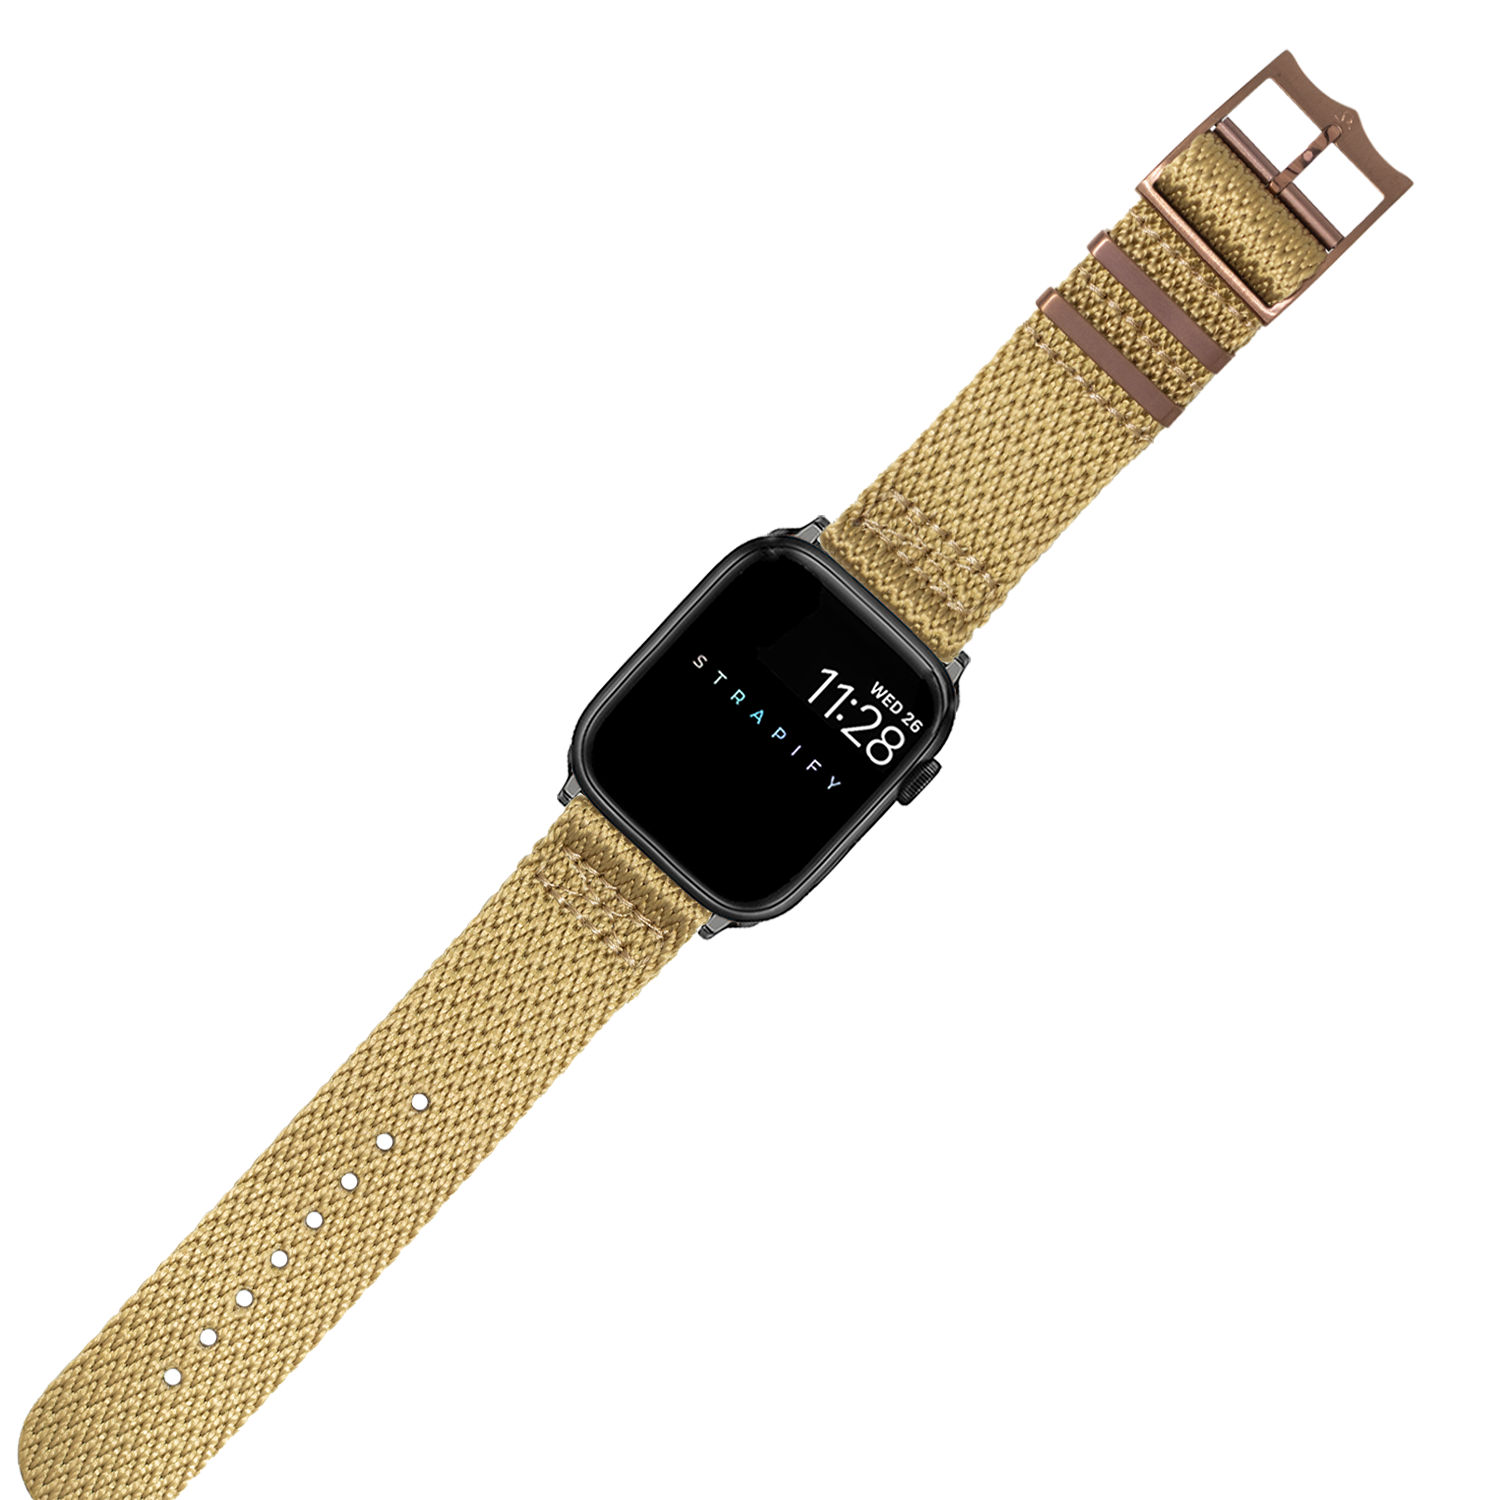 [Apple Watch] Sharktooth Militex - Wheat [Bronze Coloured Hardware]